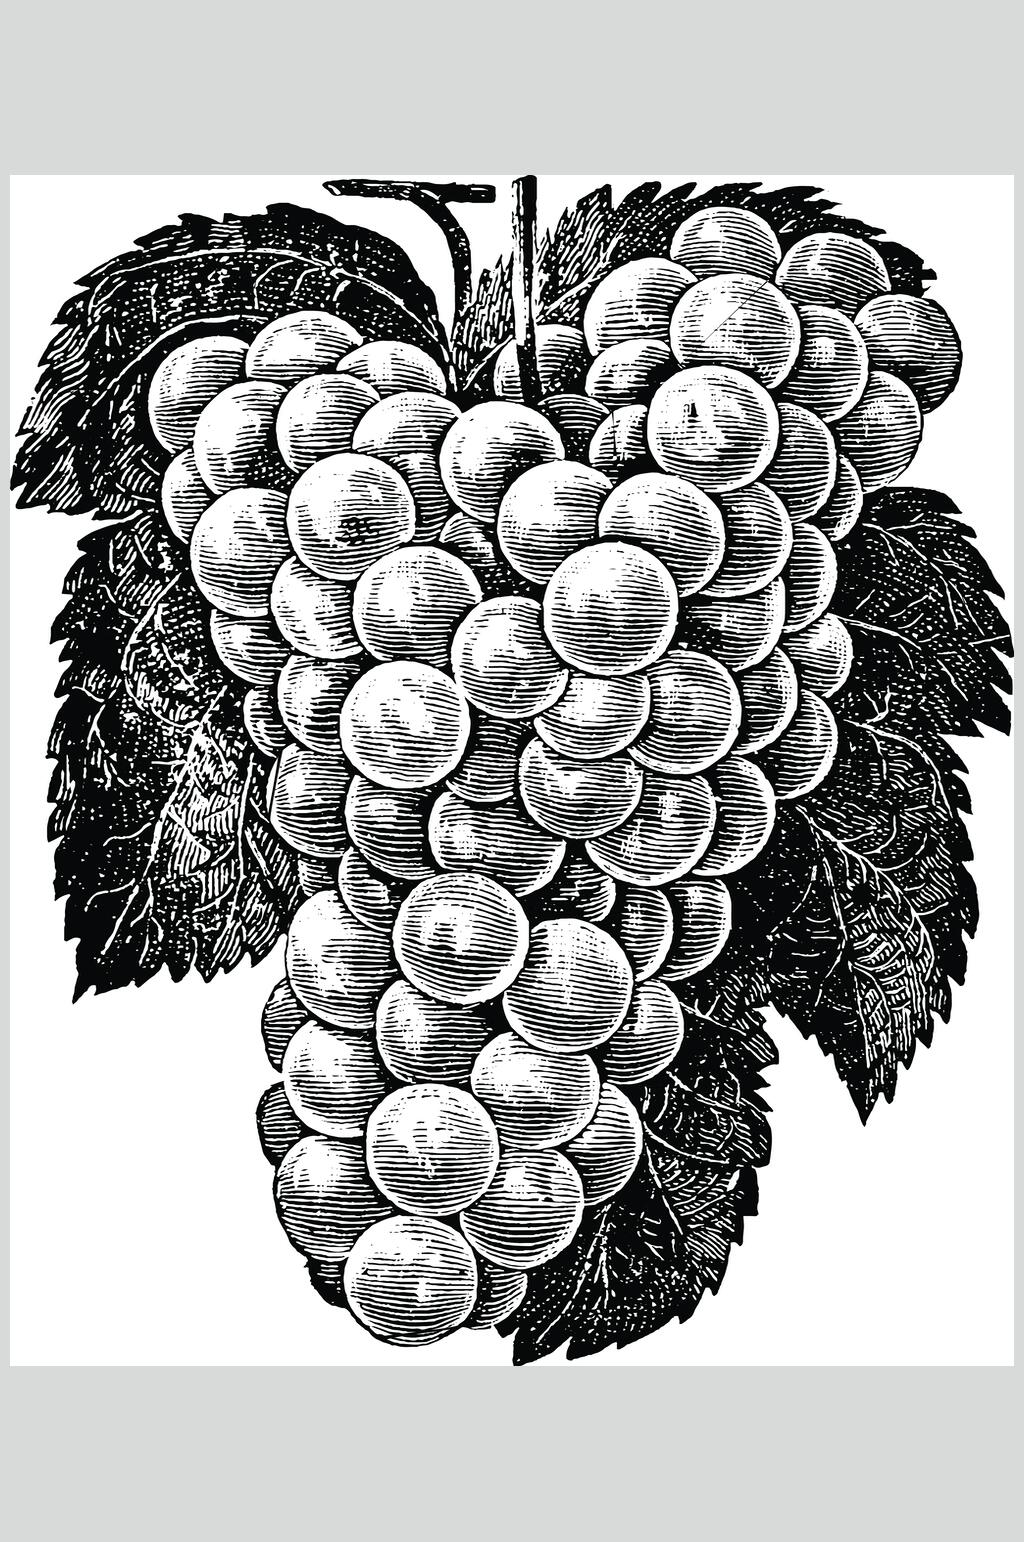 创意葡萄水果素描手绘矢量素材葡萄黑色清新水果素描手绘矢量素材立即